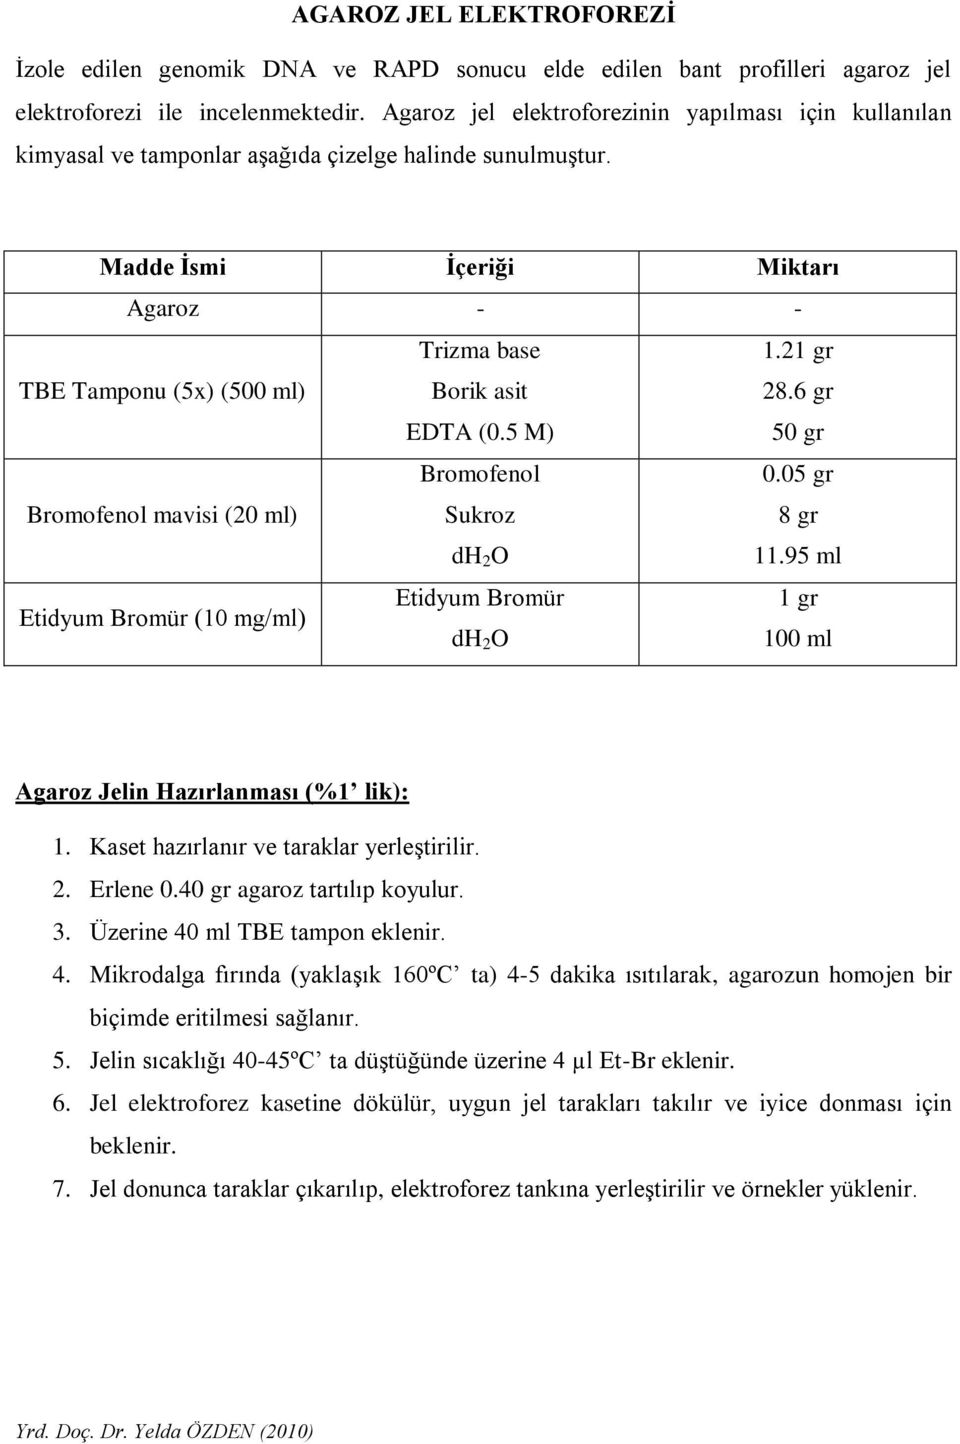 Madde Ġsmi Ġçeriği Miktarı Agaroz - - TBE Tamponu (5x) (500 ml) Trizma base Borik asit EDTA (0.5 M) 1.21 gr 28.6 gr 50 gr Bromofenol mavisi (20 ml) Bromofenol Sukroz dh 2 O 0.05 gr 8 gr 11.